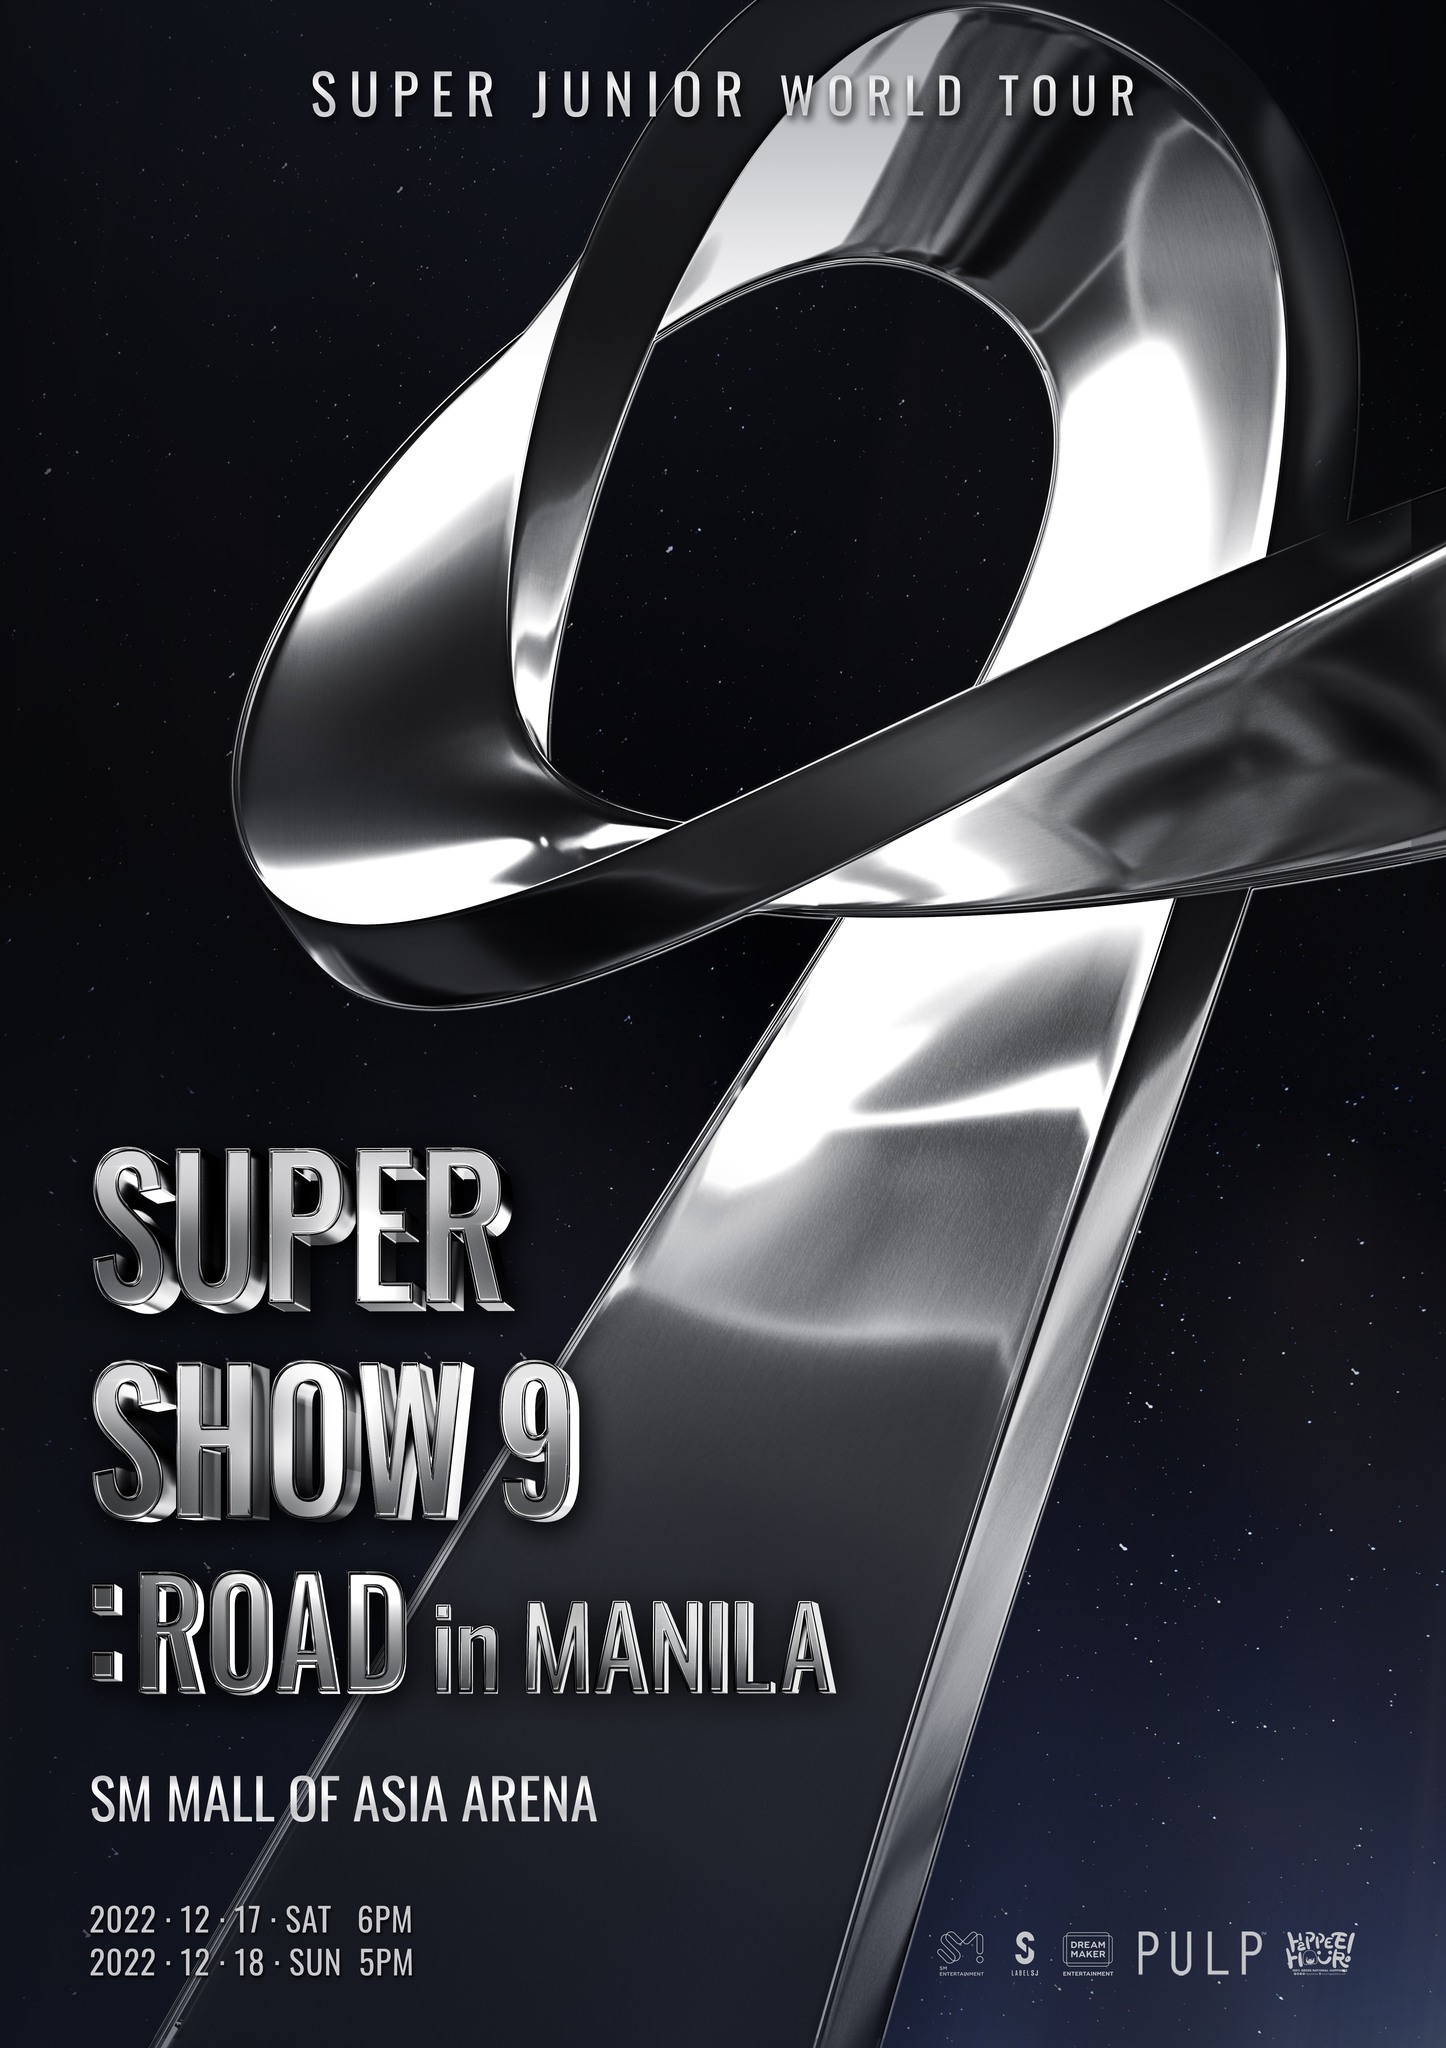 Super Show 9 in Manila